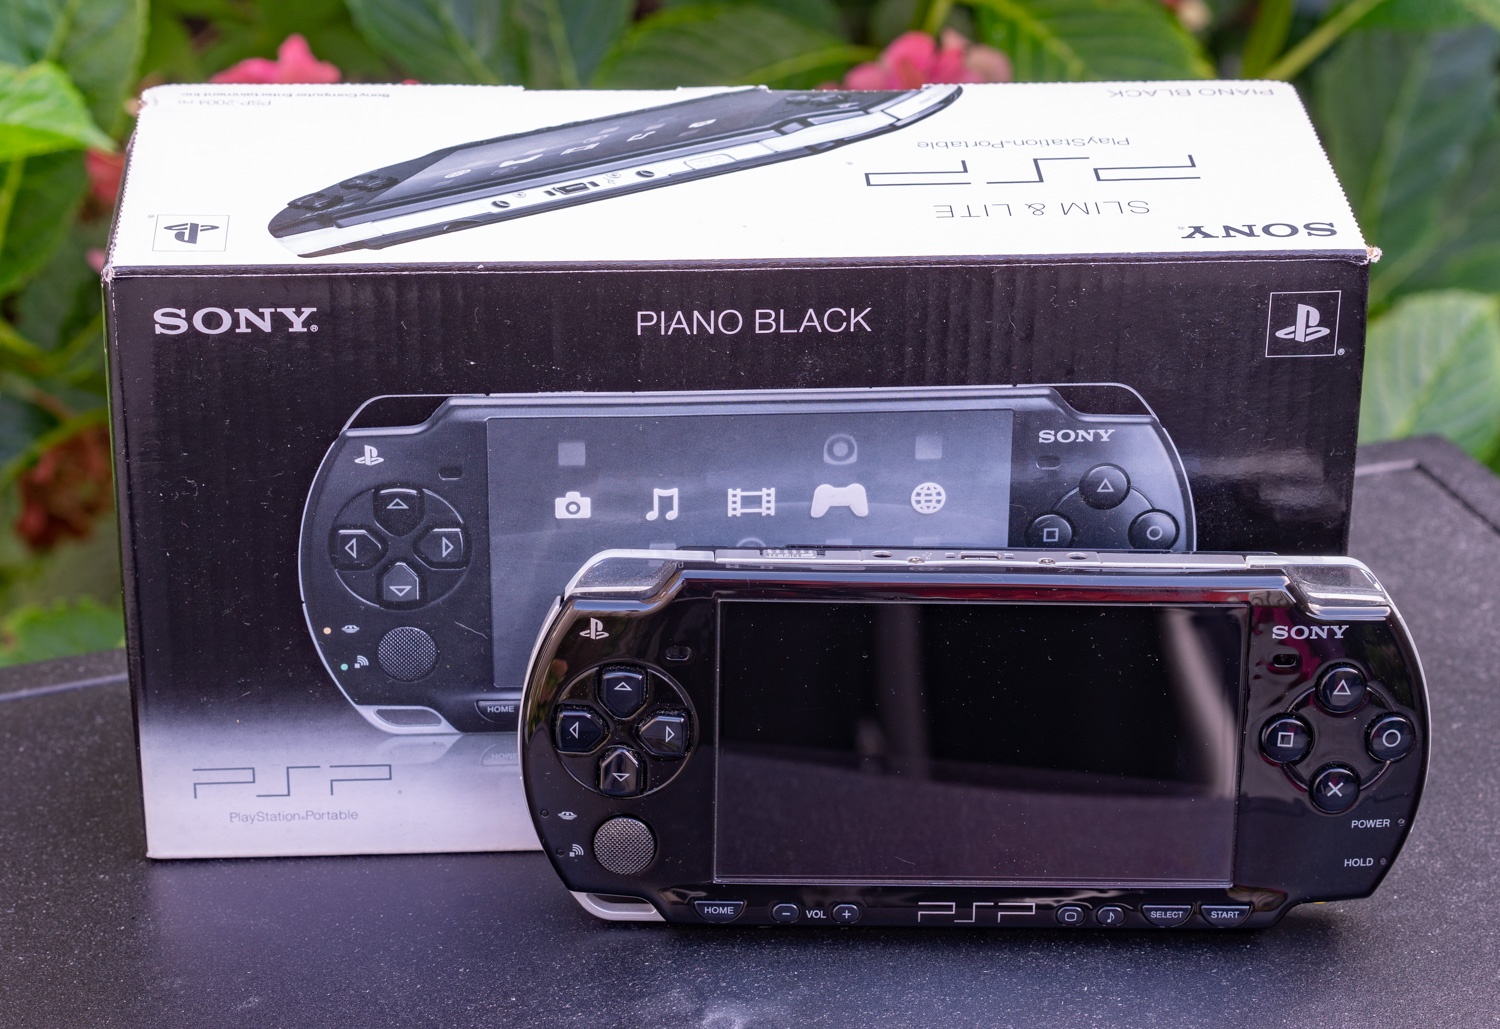 Sony Playstation Portable, радость коллекционера - 4